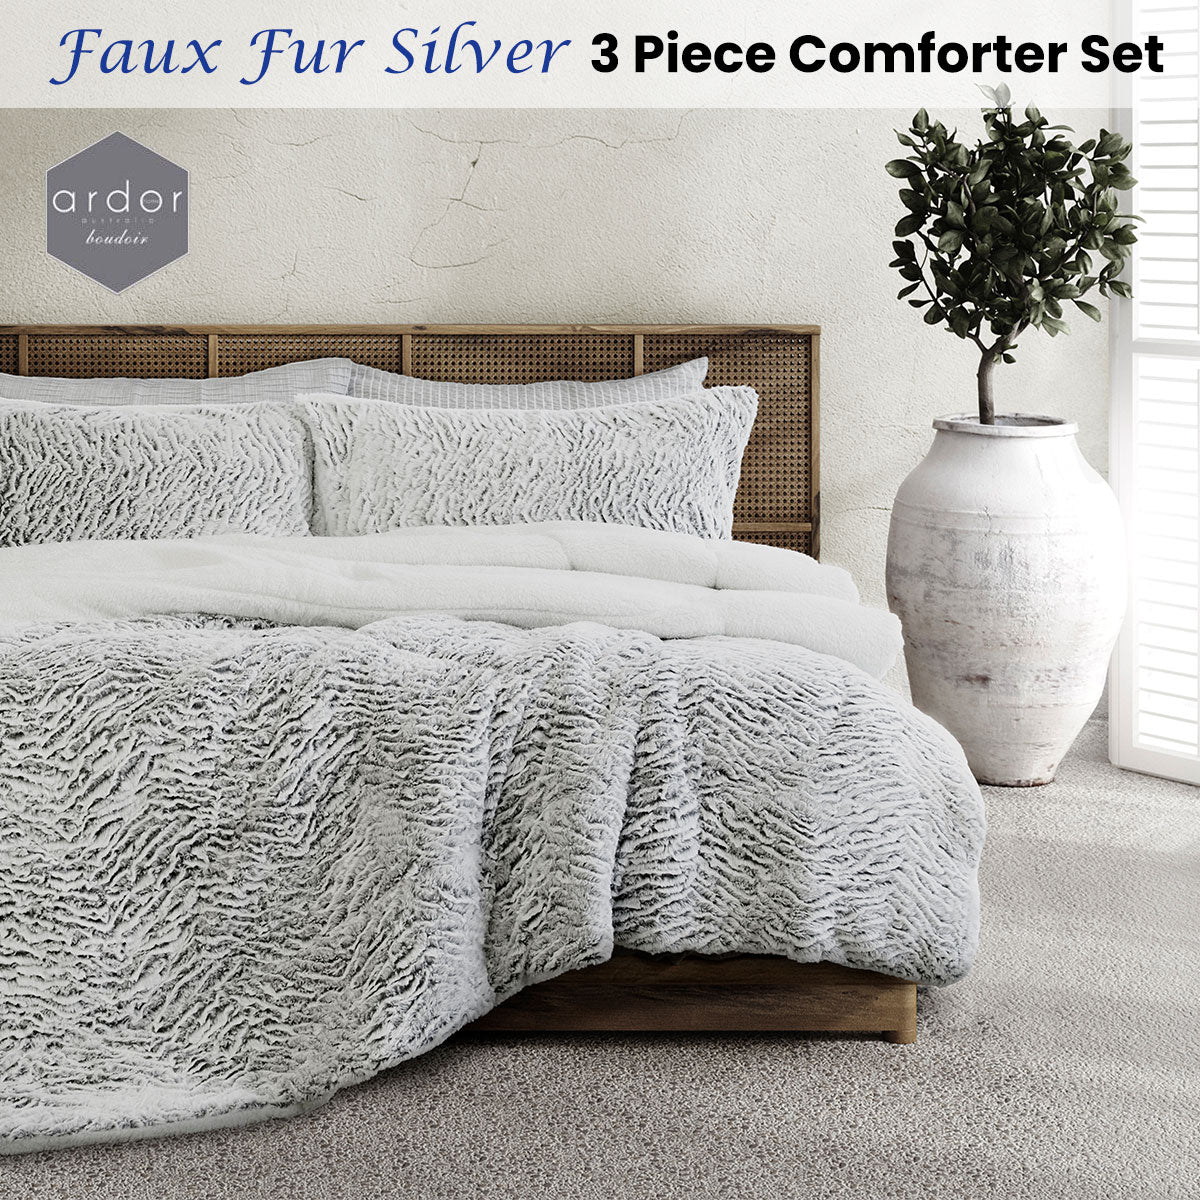 Ardor Faux Fur Silver 3 Piece Comforter Set Single/Double - Home & Garden > Bedding - Zanlana Design and Home Decor